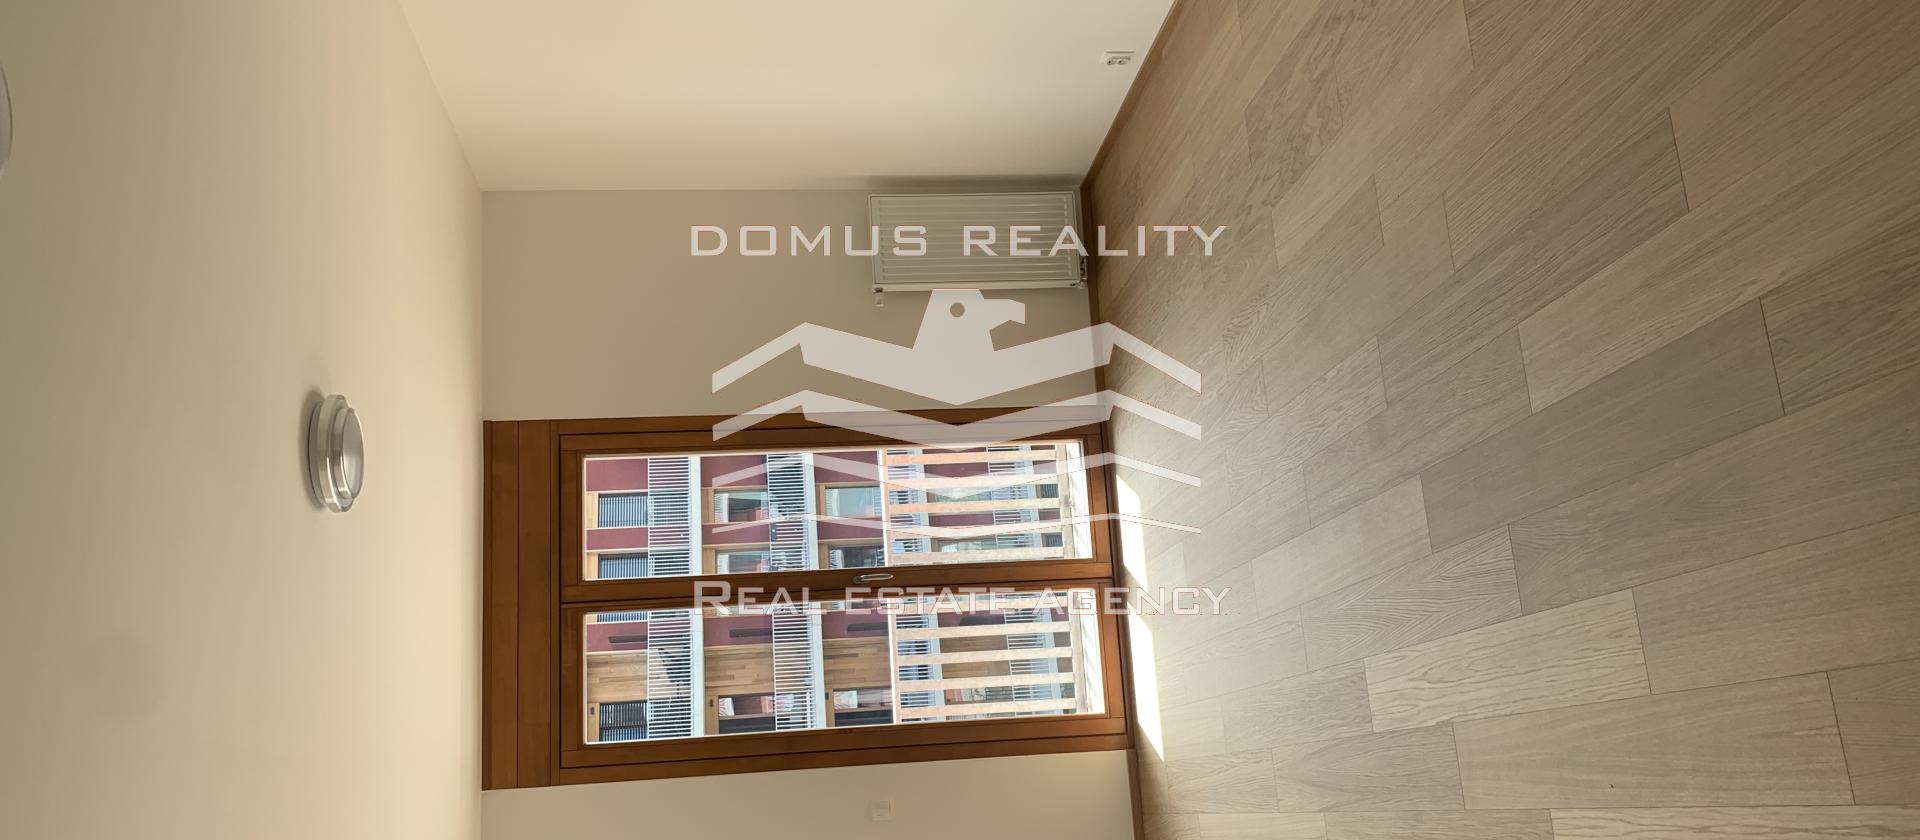 Domus reality nabízí k pronájmu nezařízený byt 3+kk o velikosti 94m2 s balkonem, garáží v ceně